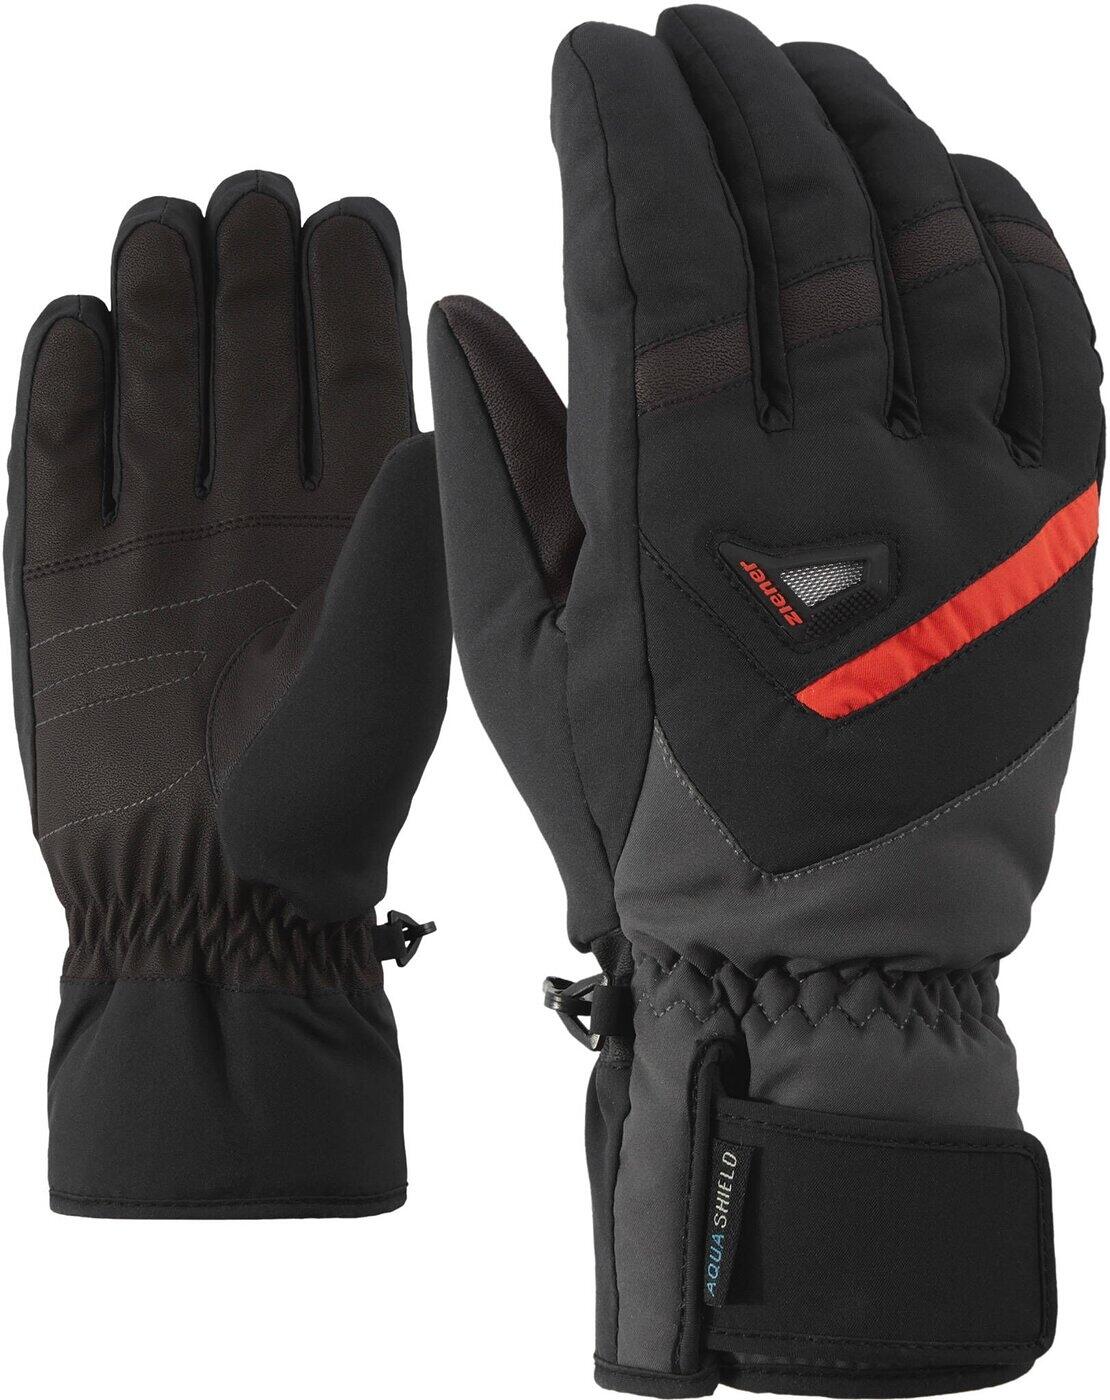 Ziener Ziener GARY AS(R) glove black/graphite 1215 10,5 alpine ski